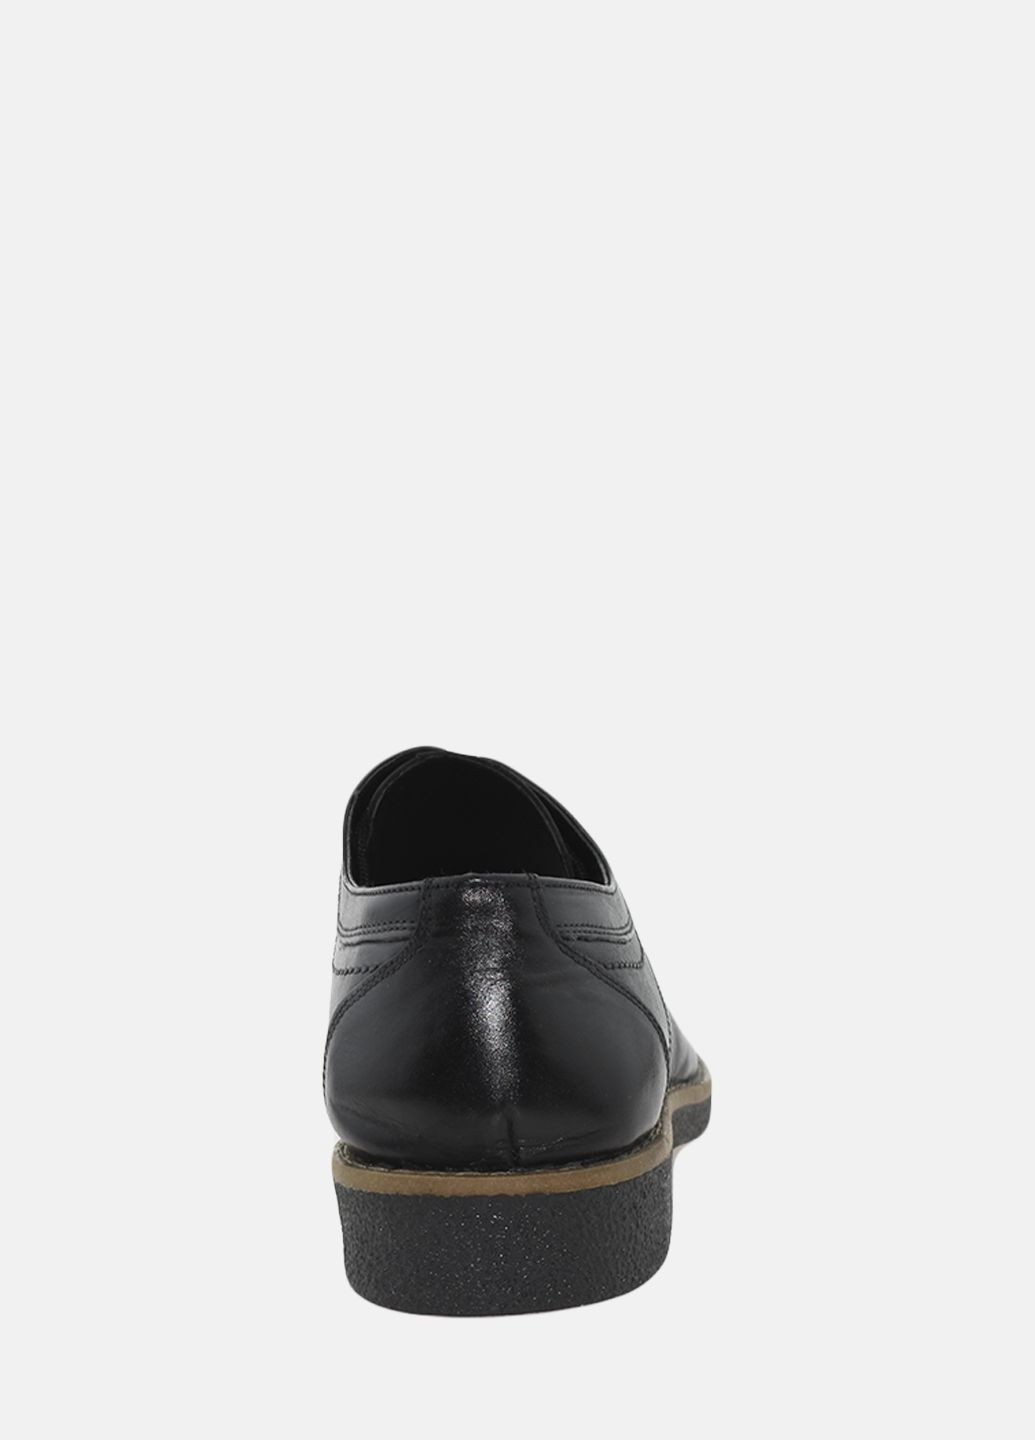 Черные туфли g1001.01 черный Goover